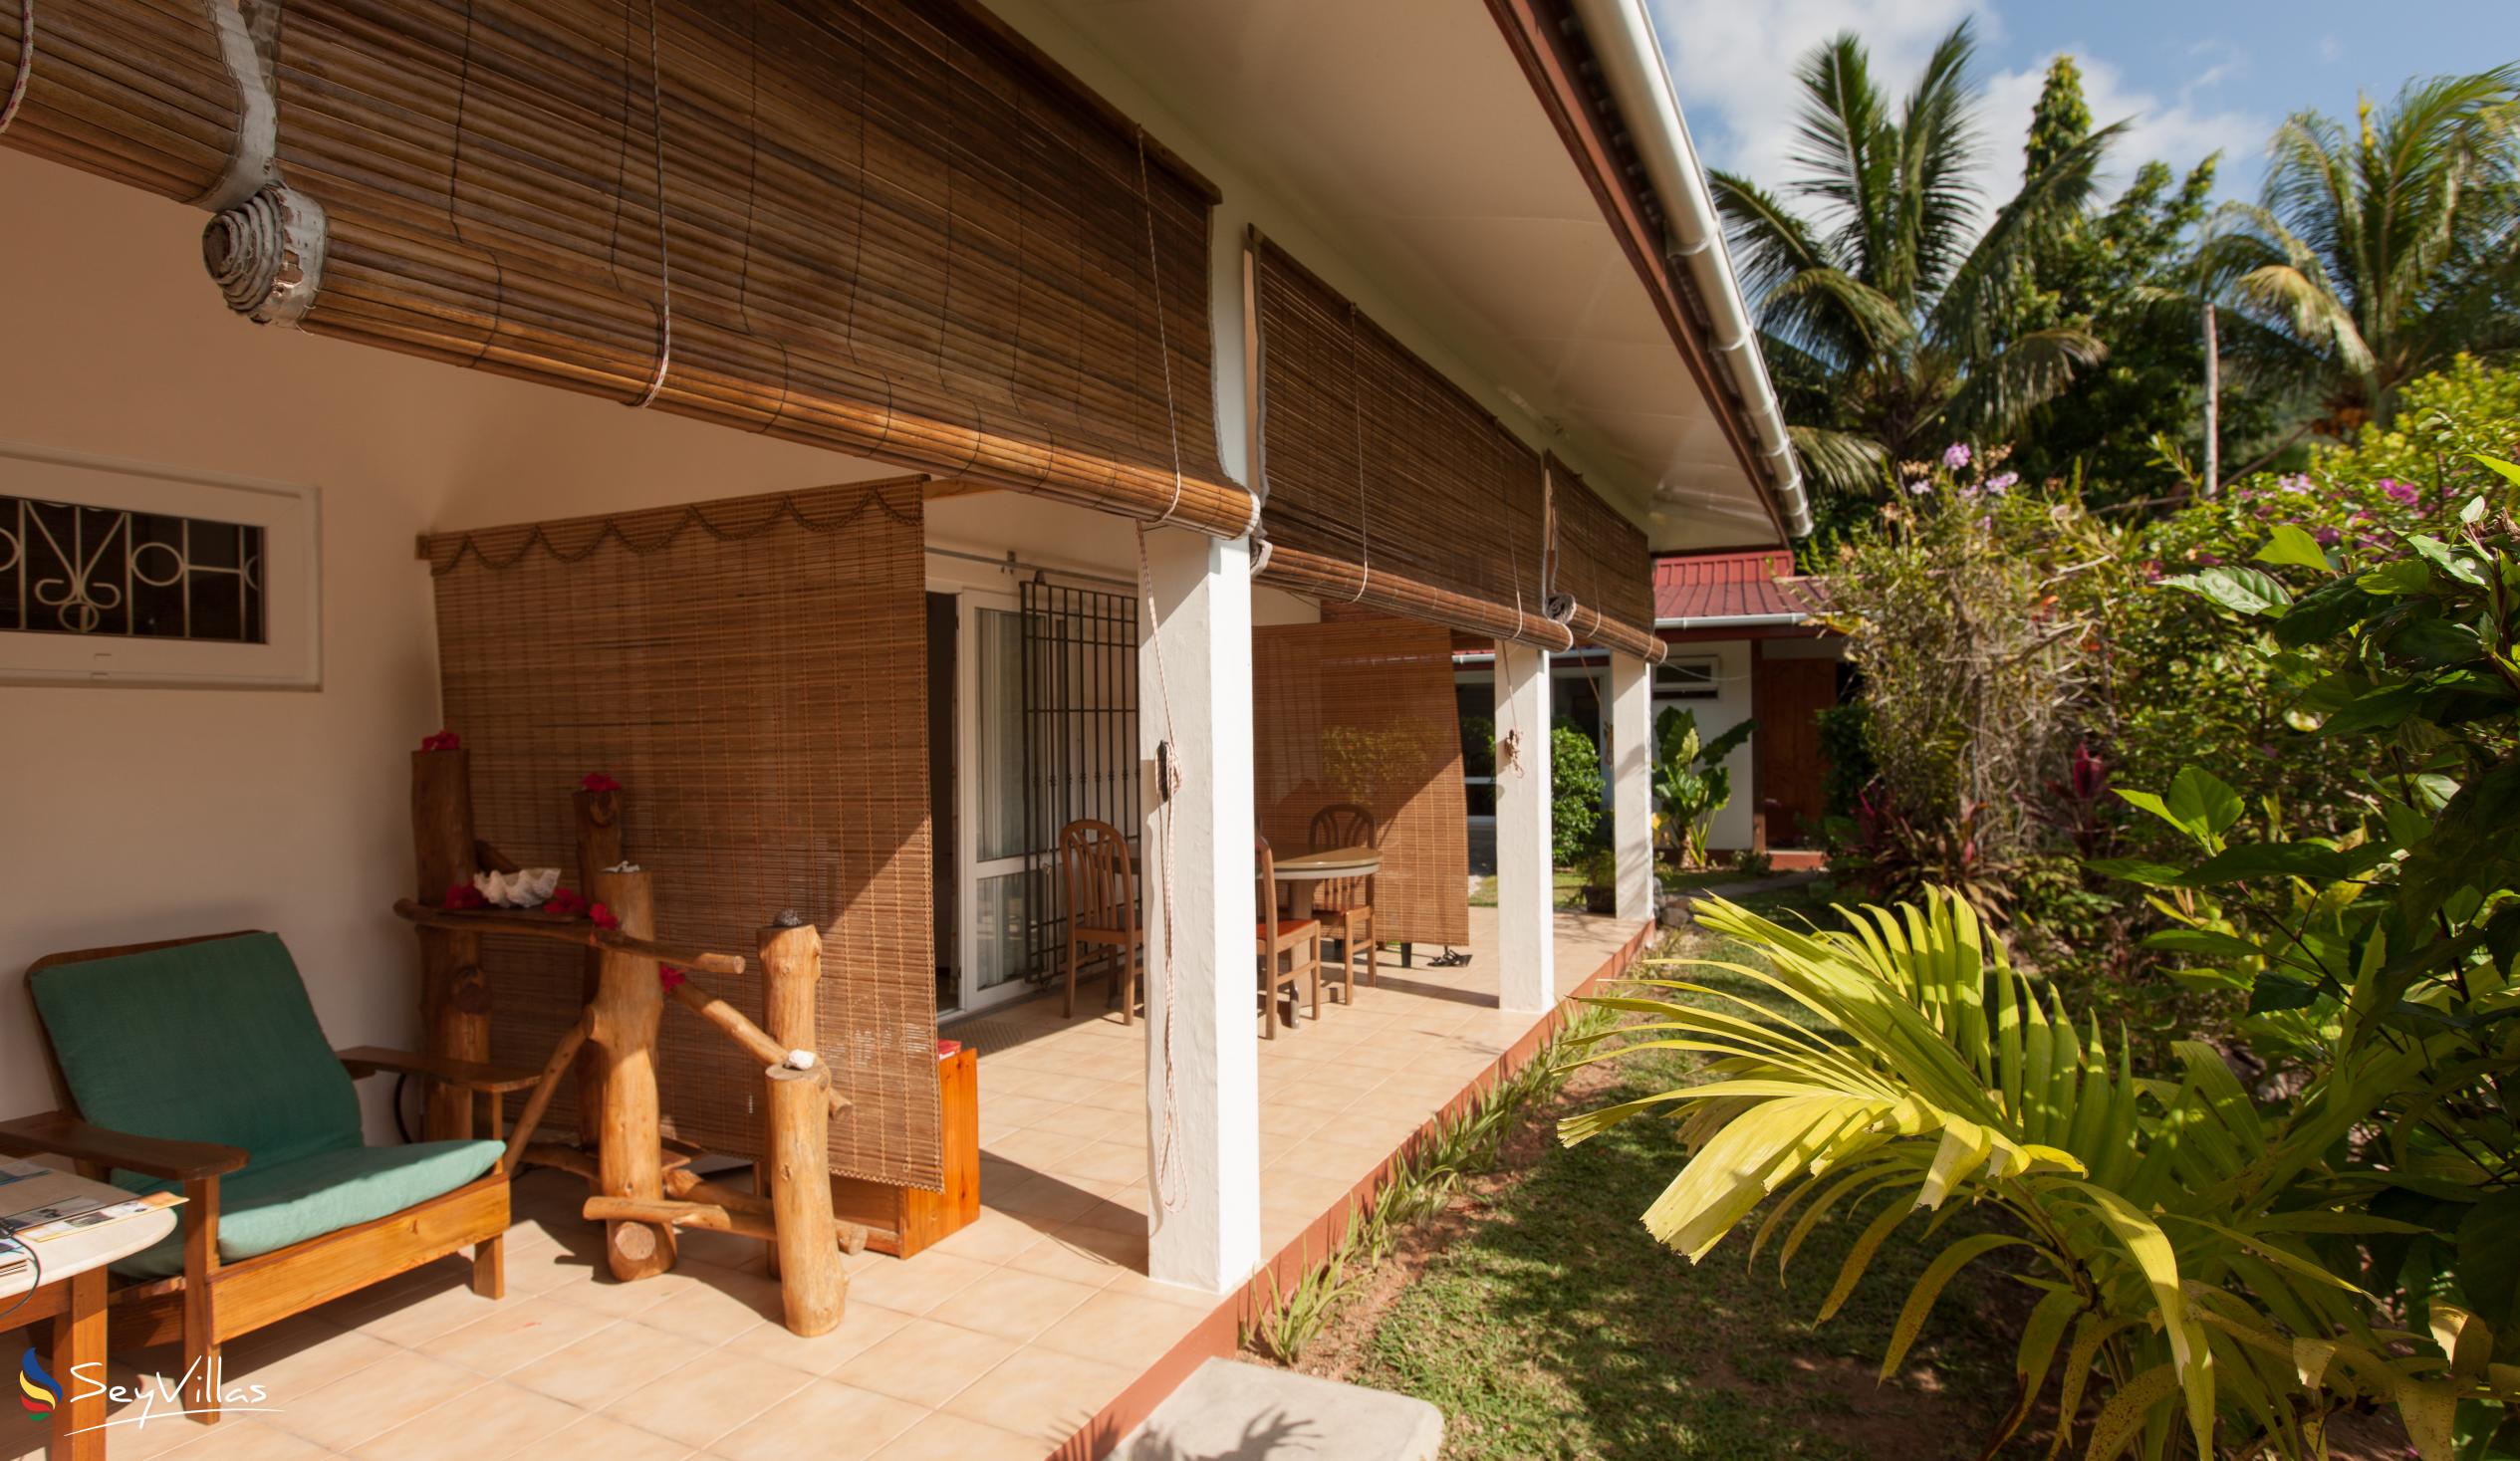 Foto 8: Le Relax St. Joseph Guest House - Aussenbereich - Praslin (Seychellen)